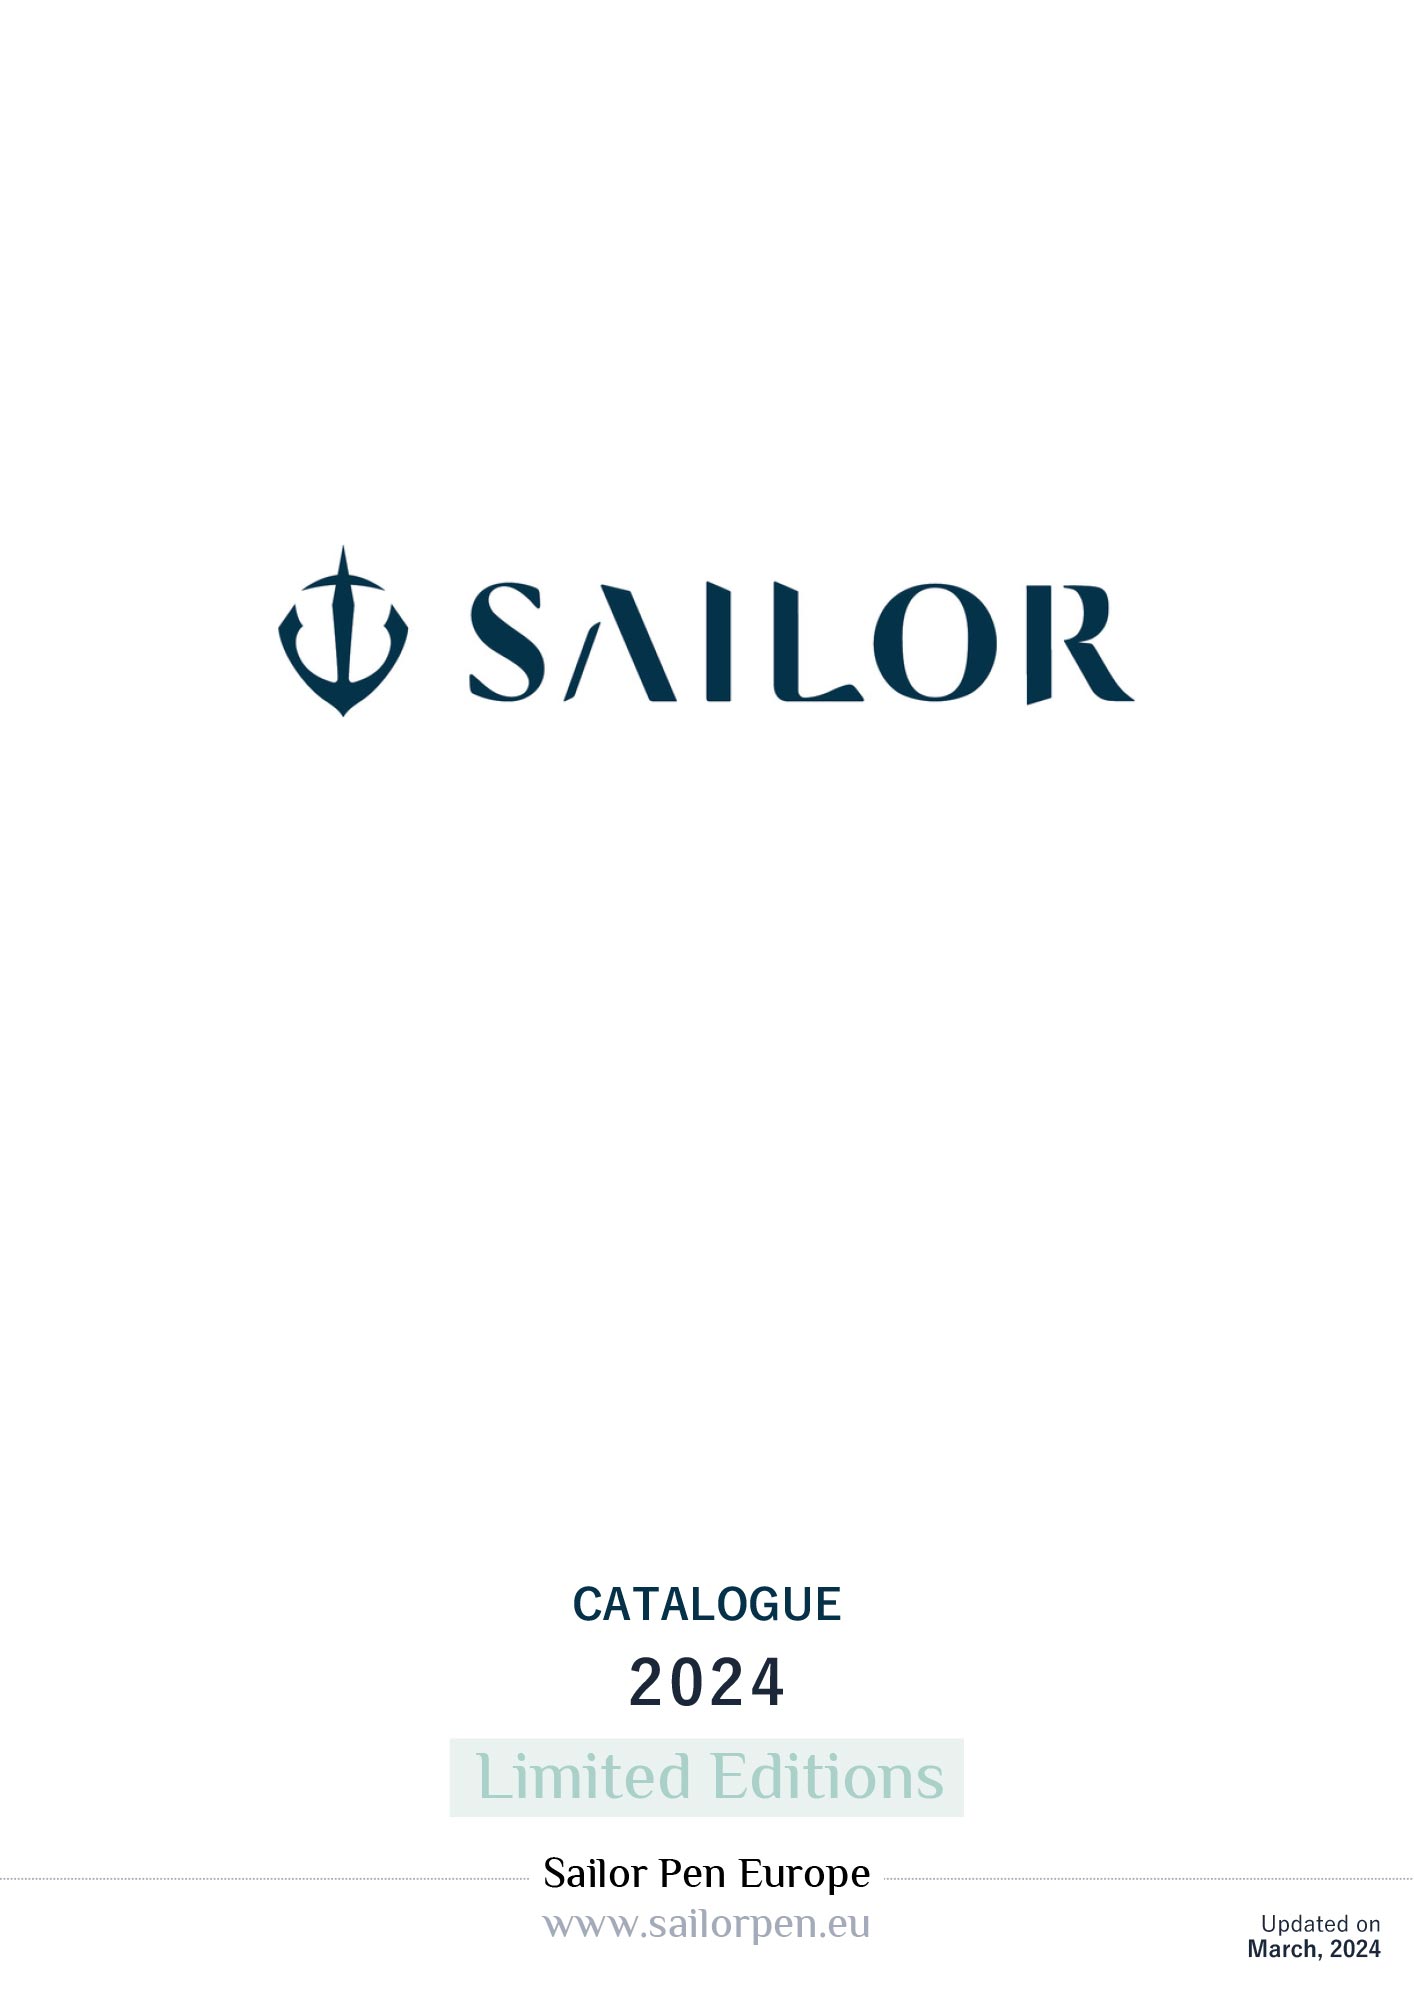 Sailor LE Catalogue 2024